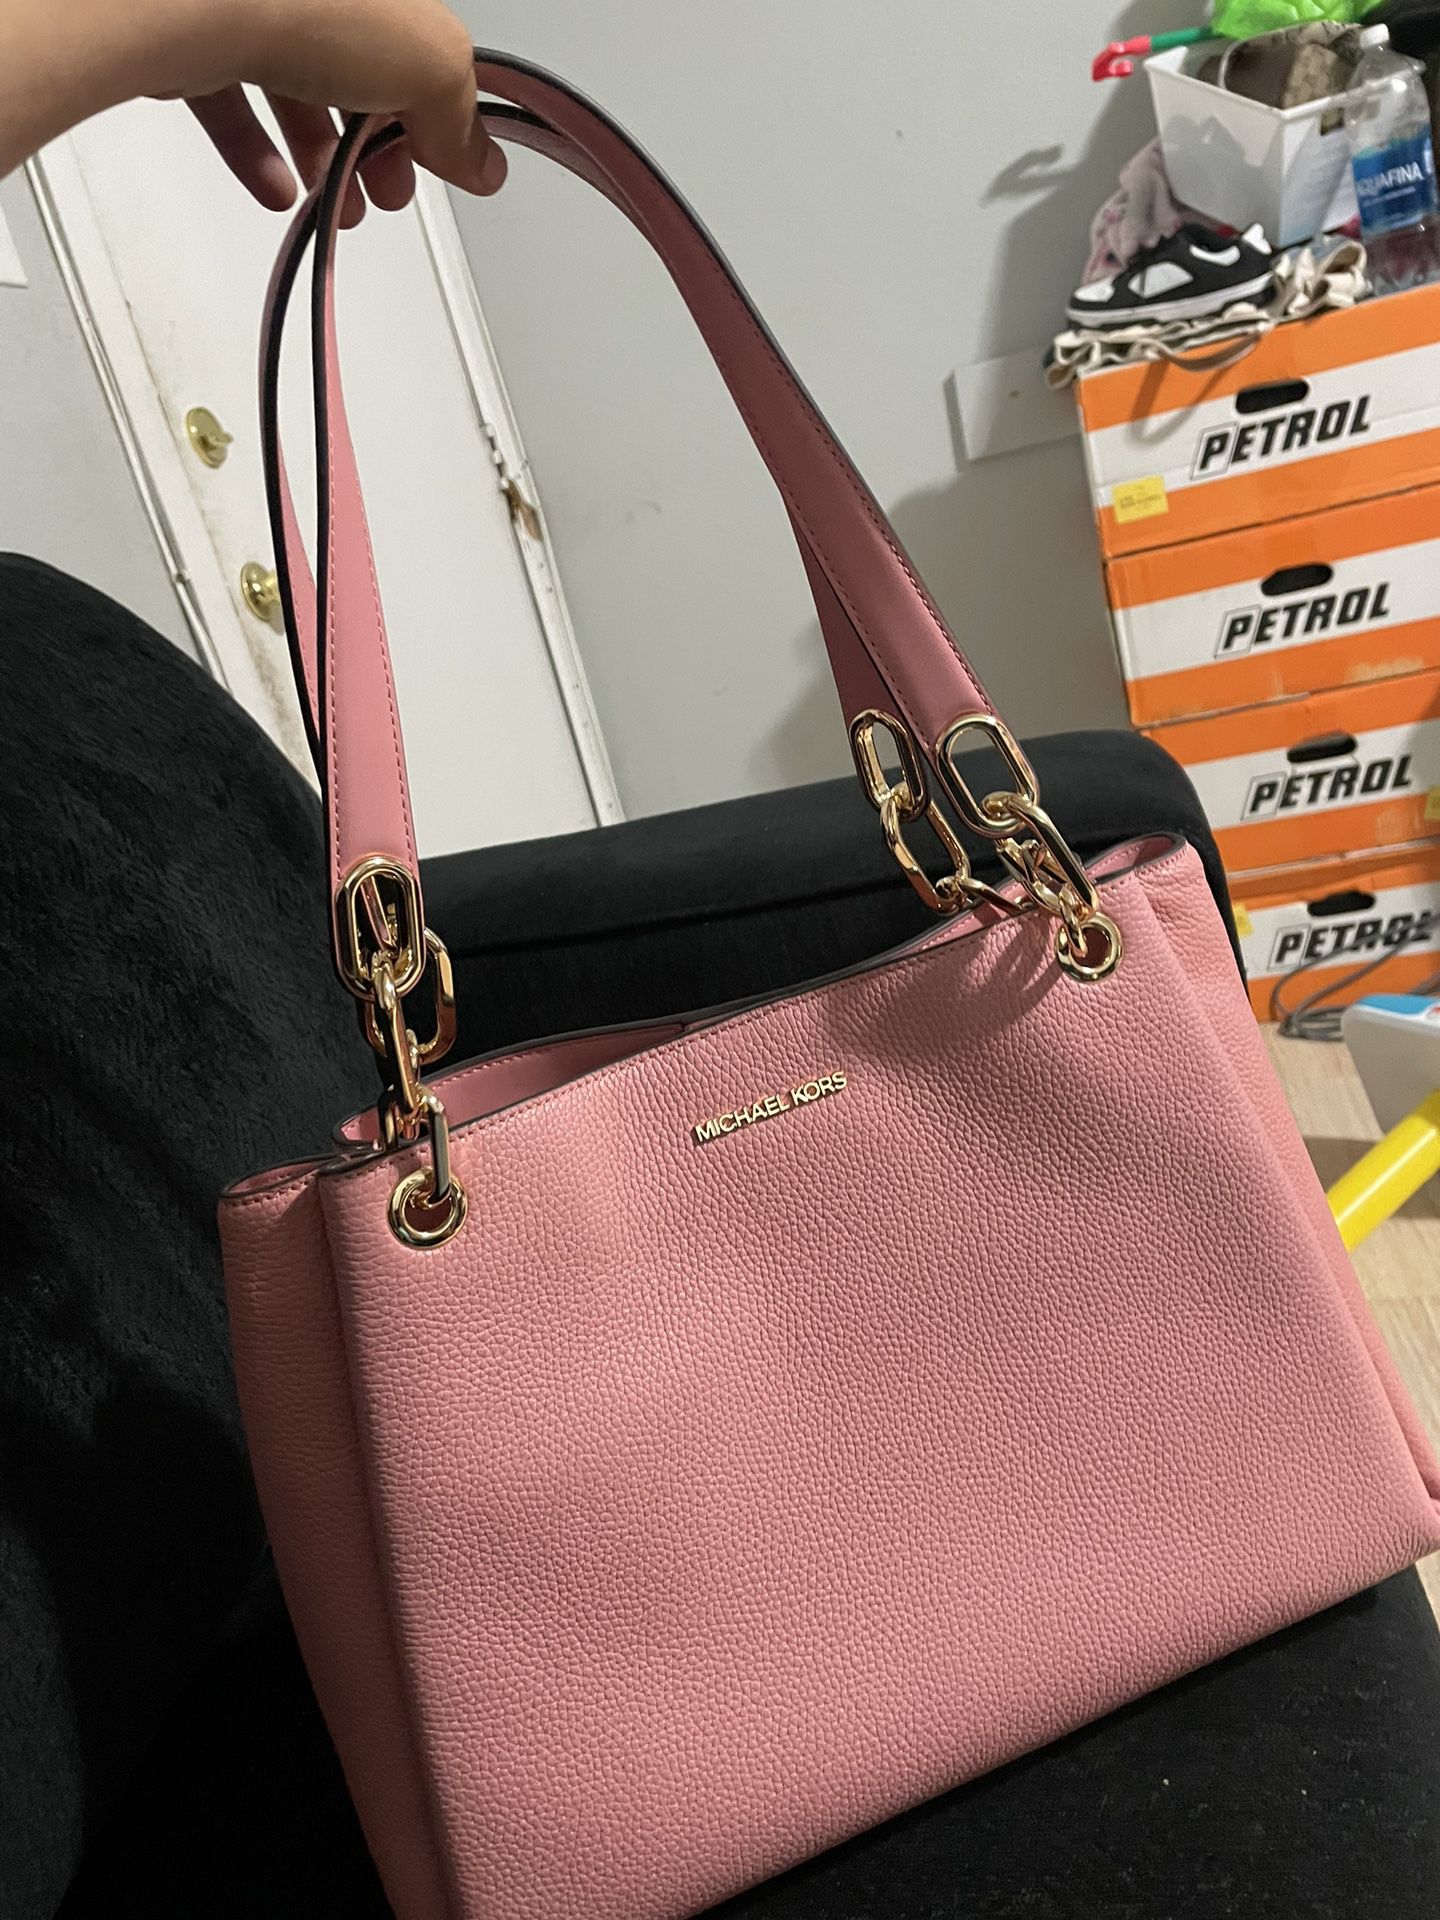 Michael Kors Pink Bag 